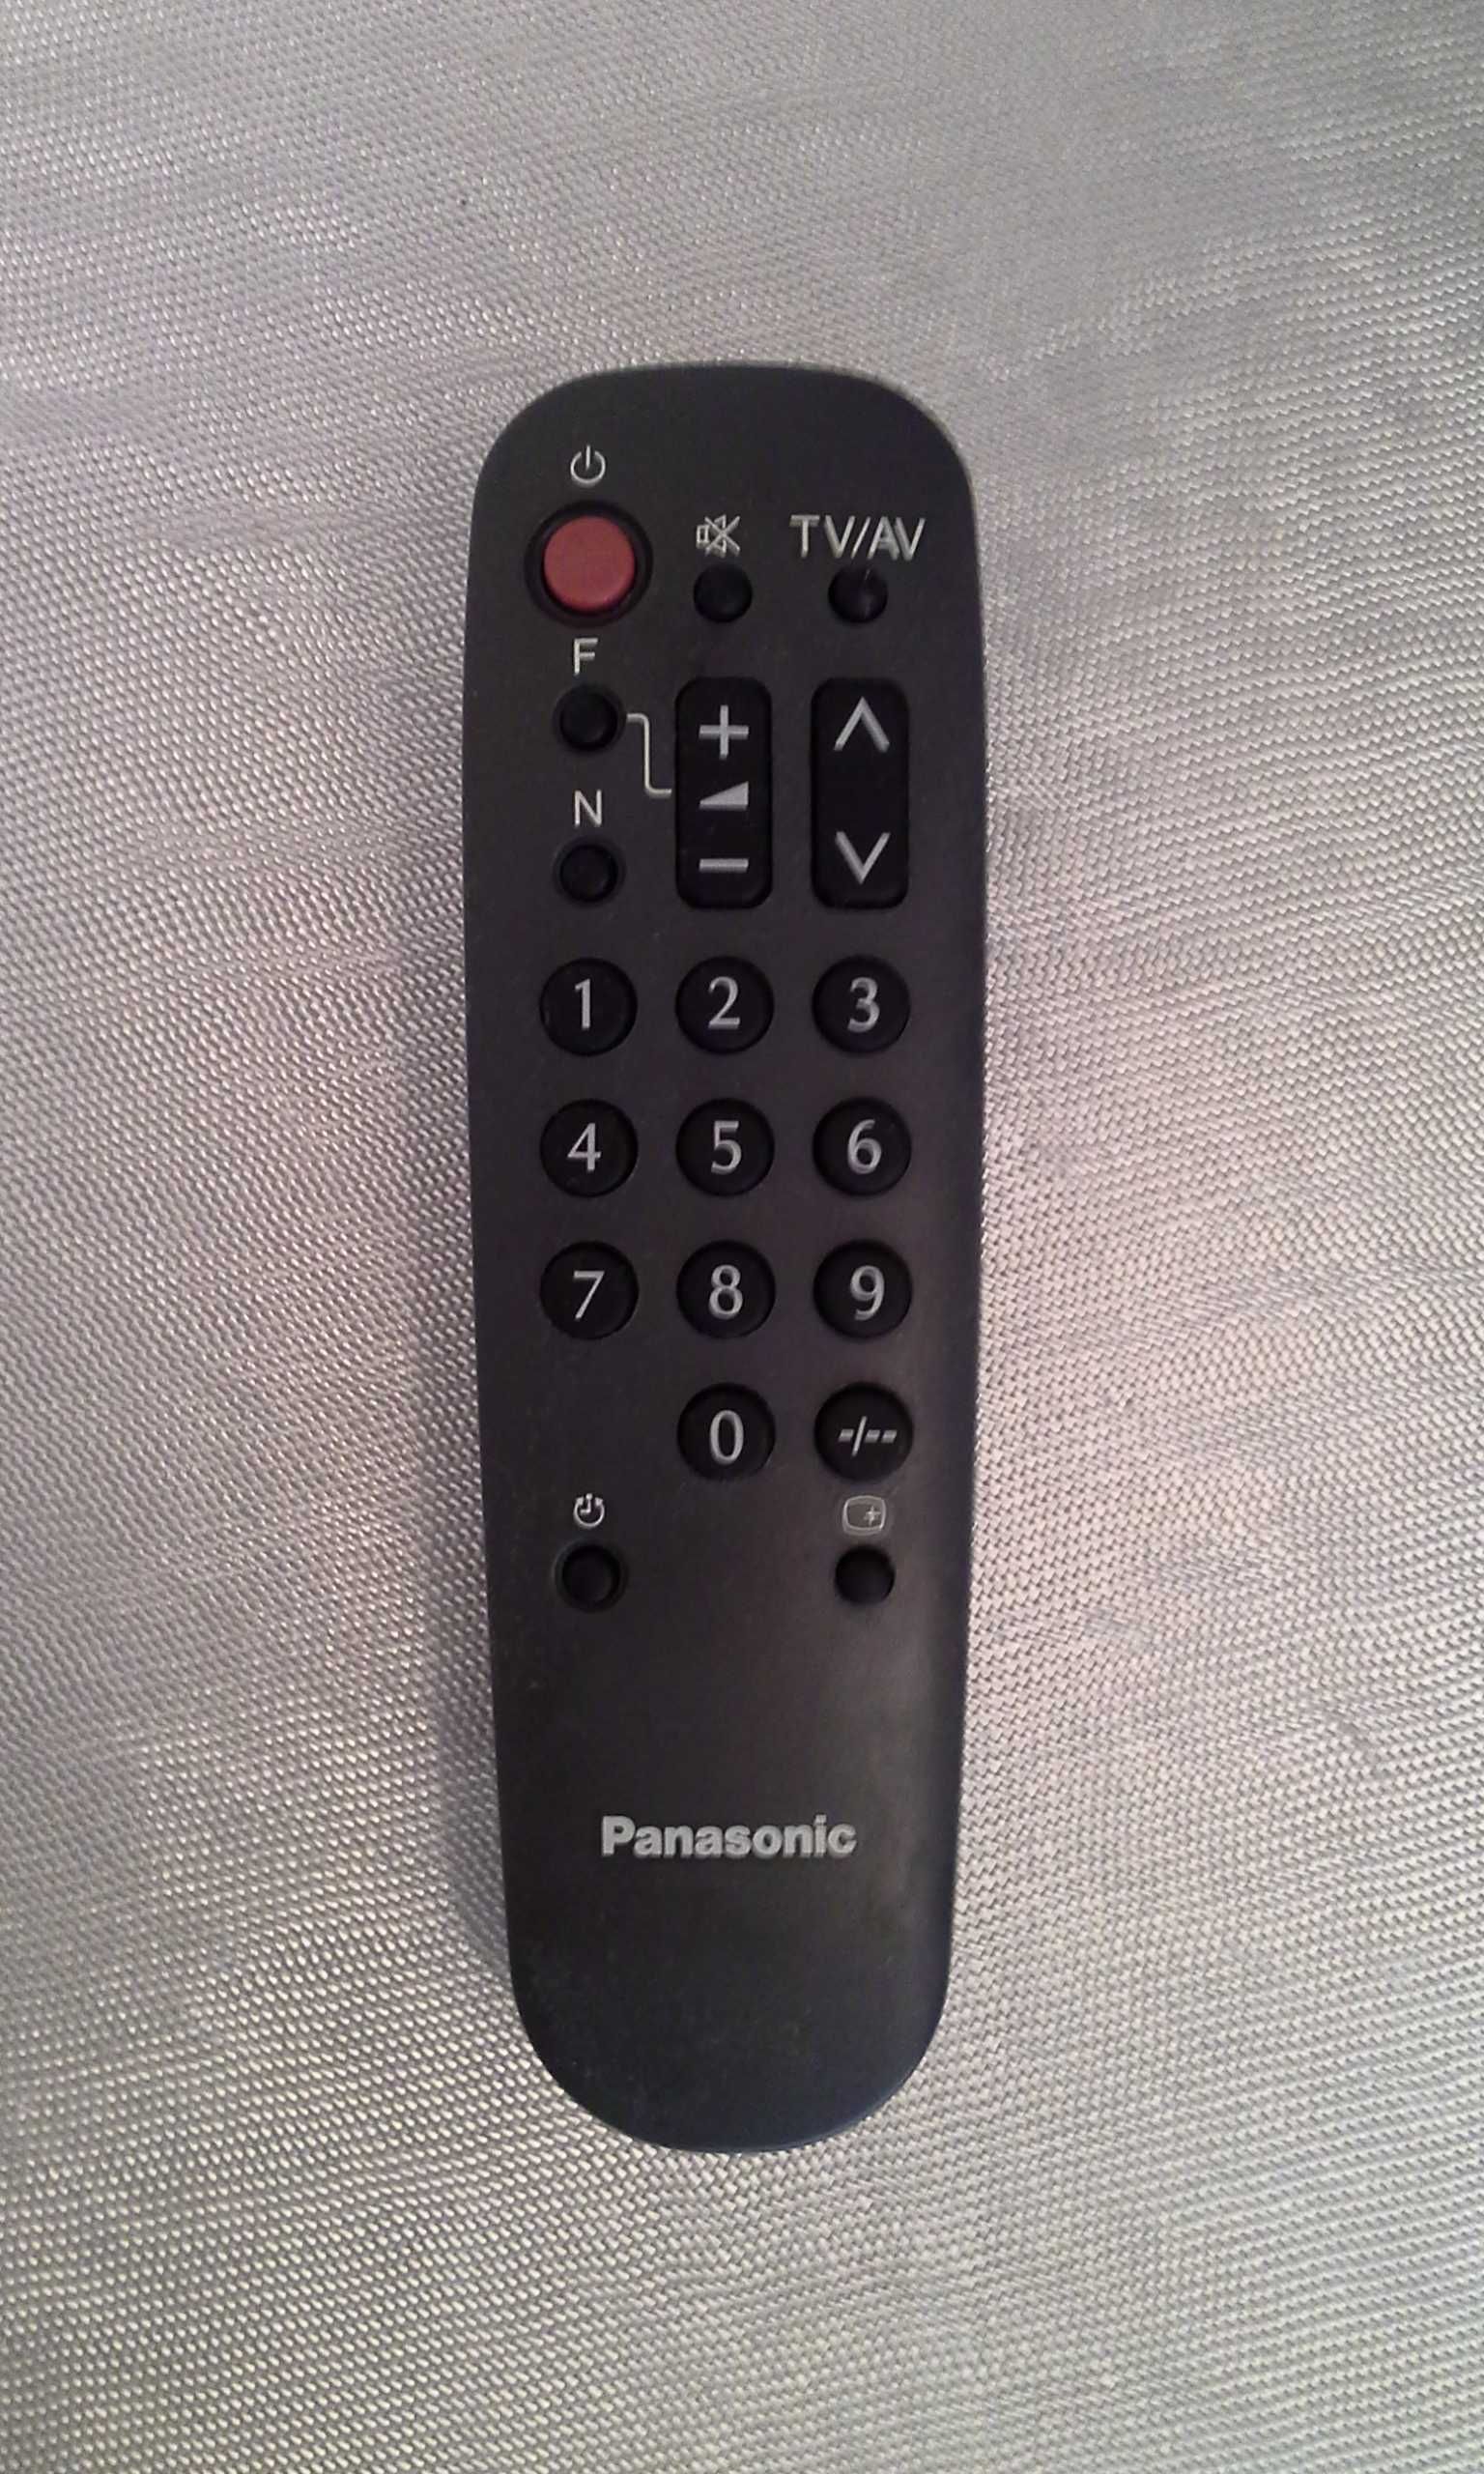 Телевизор Panasonic TC-2160R и комнатная антенна.